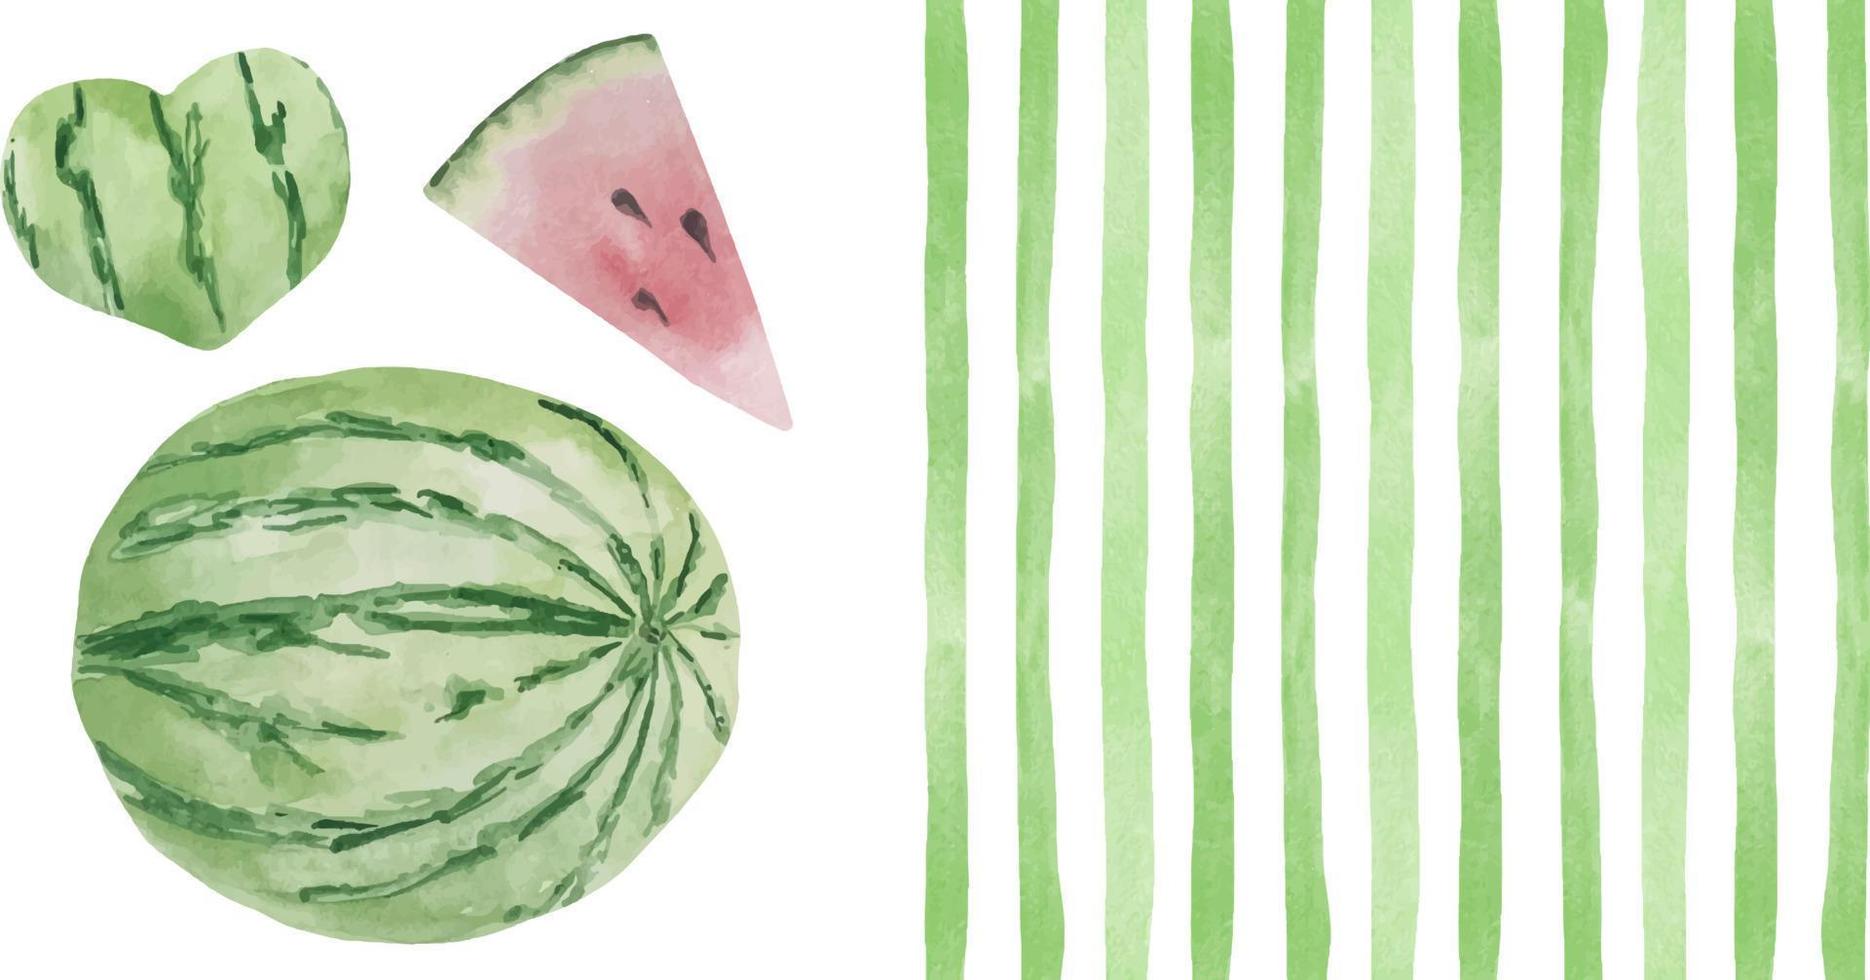 aquarel achtergrond met groene stroken en hele groene ronde watermeloen. zomersjabloonachtergrond met fruit voor ansichtkaarten en kaarten vector